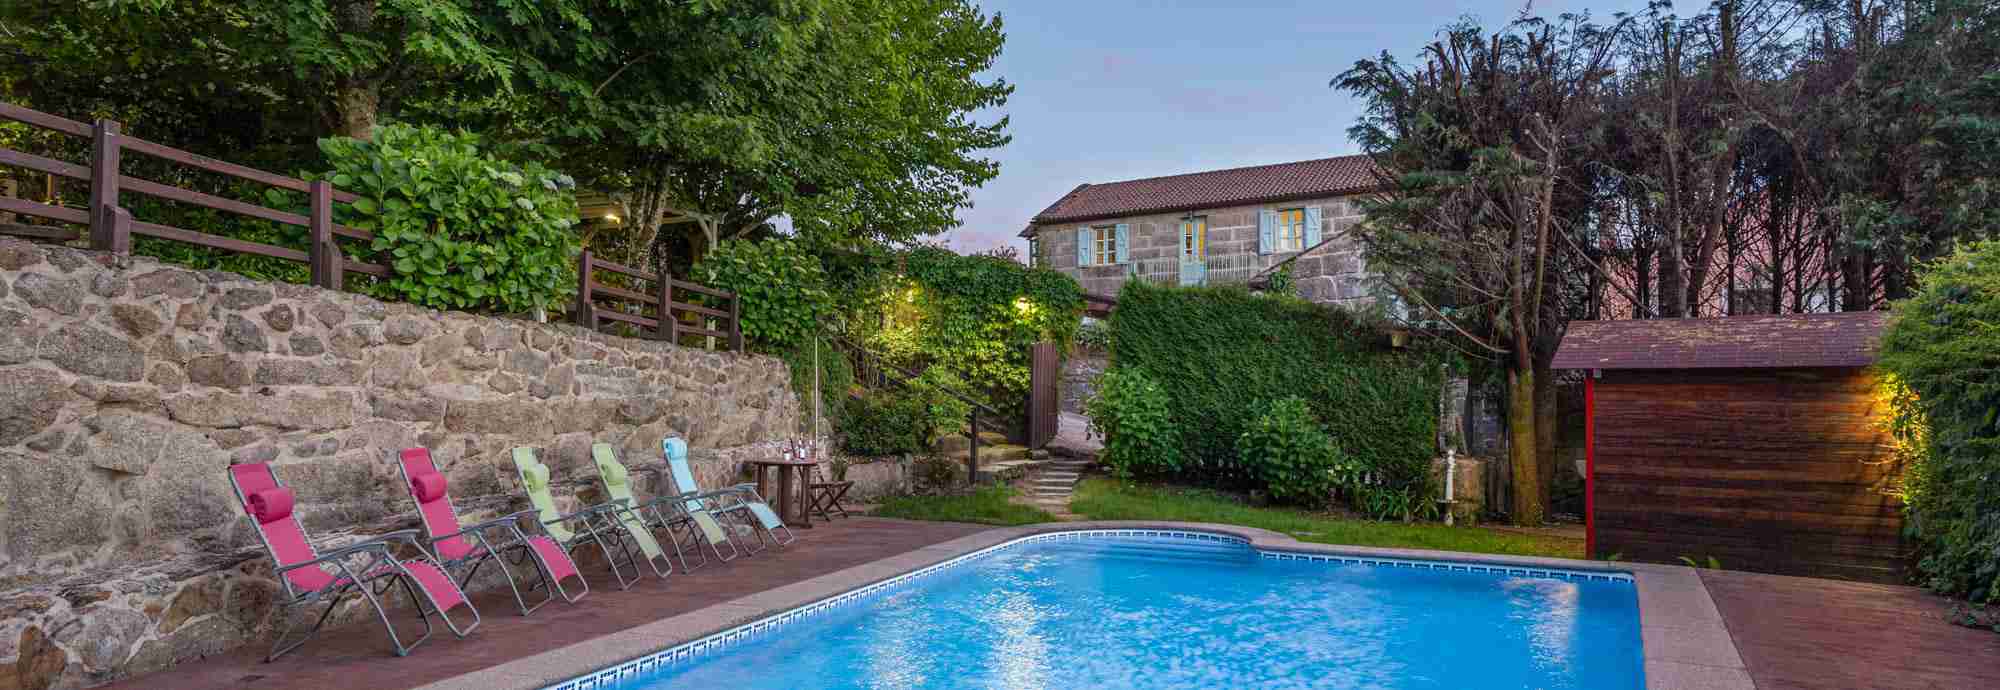 Casa rural gallega de calidad, gran estilo y jardín con piscina cerrada